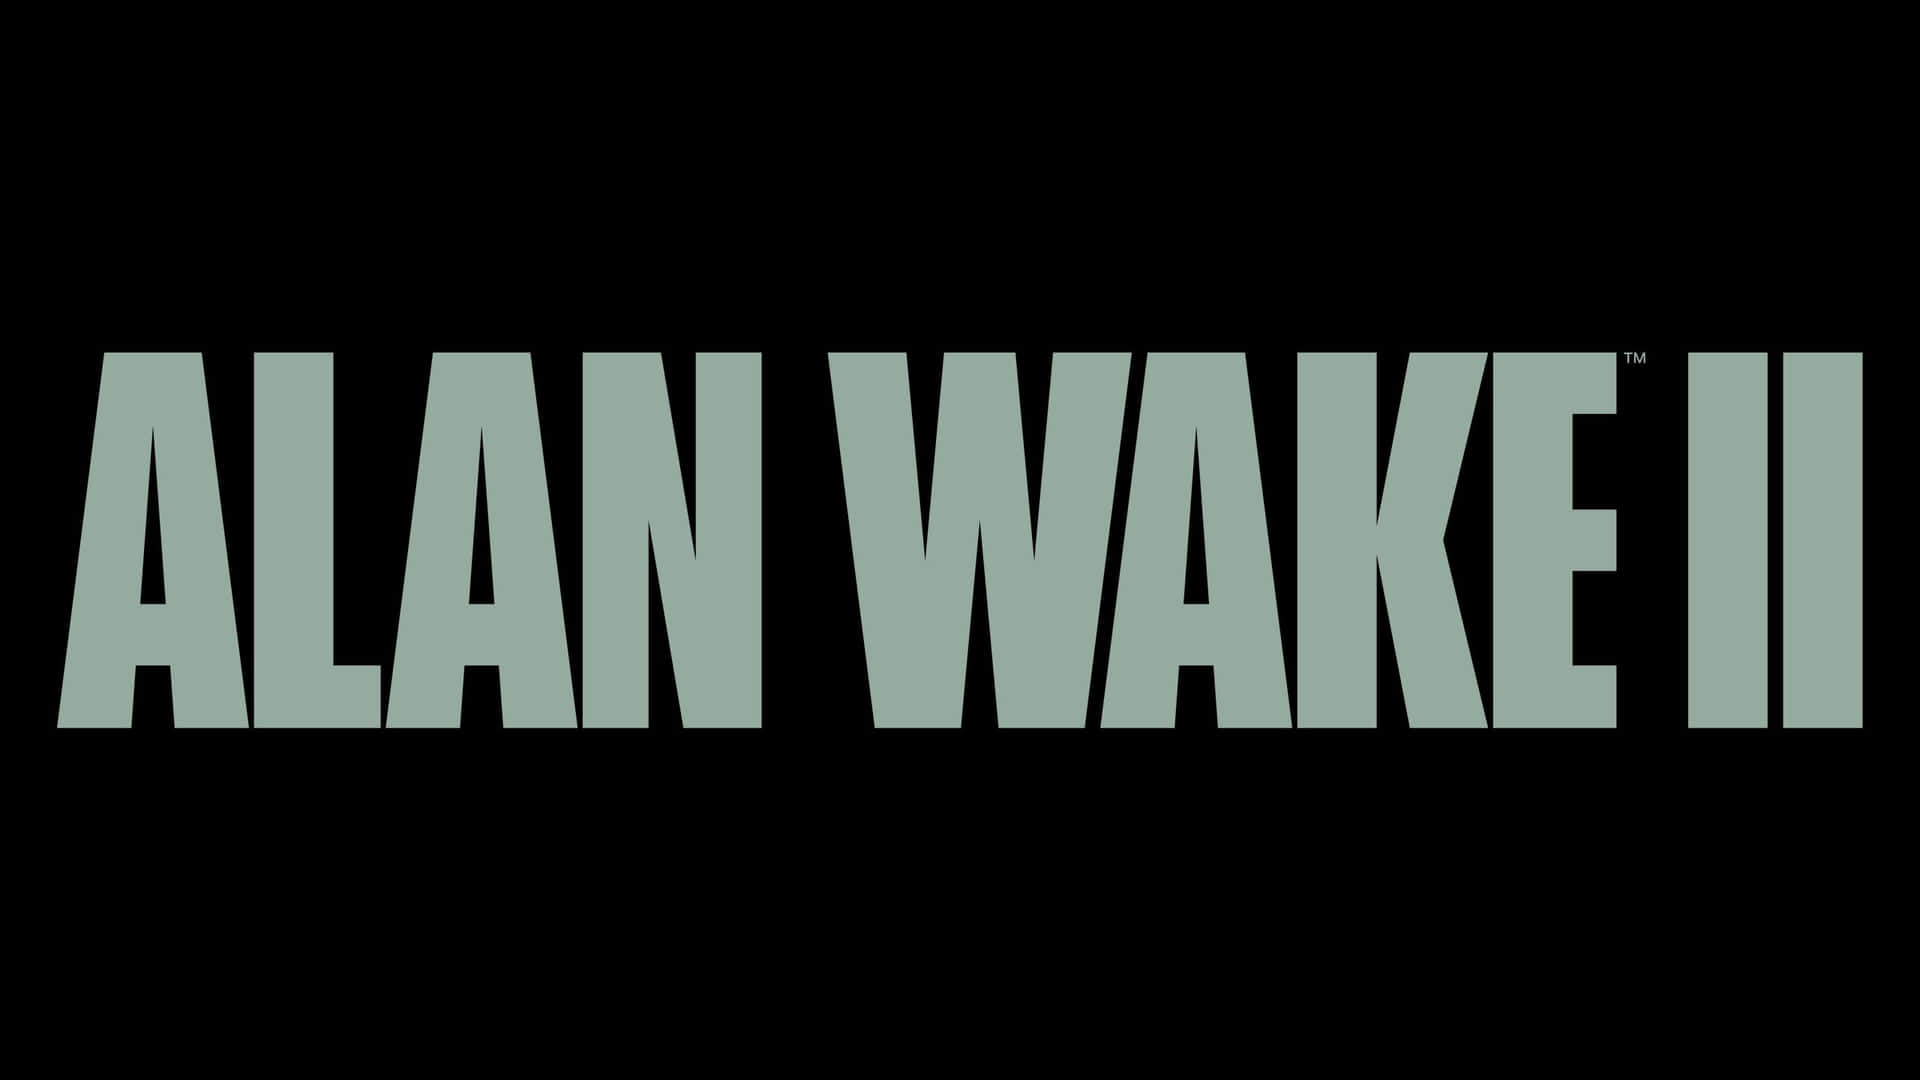 Alan Wake2 Logo Wallpaper